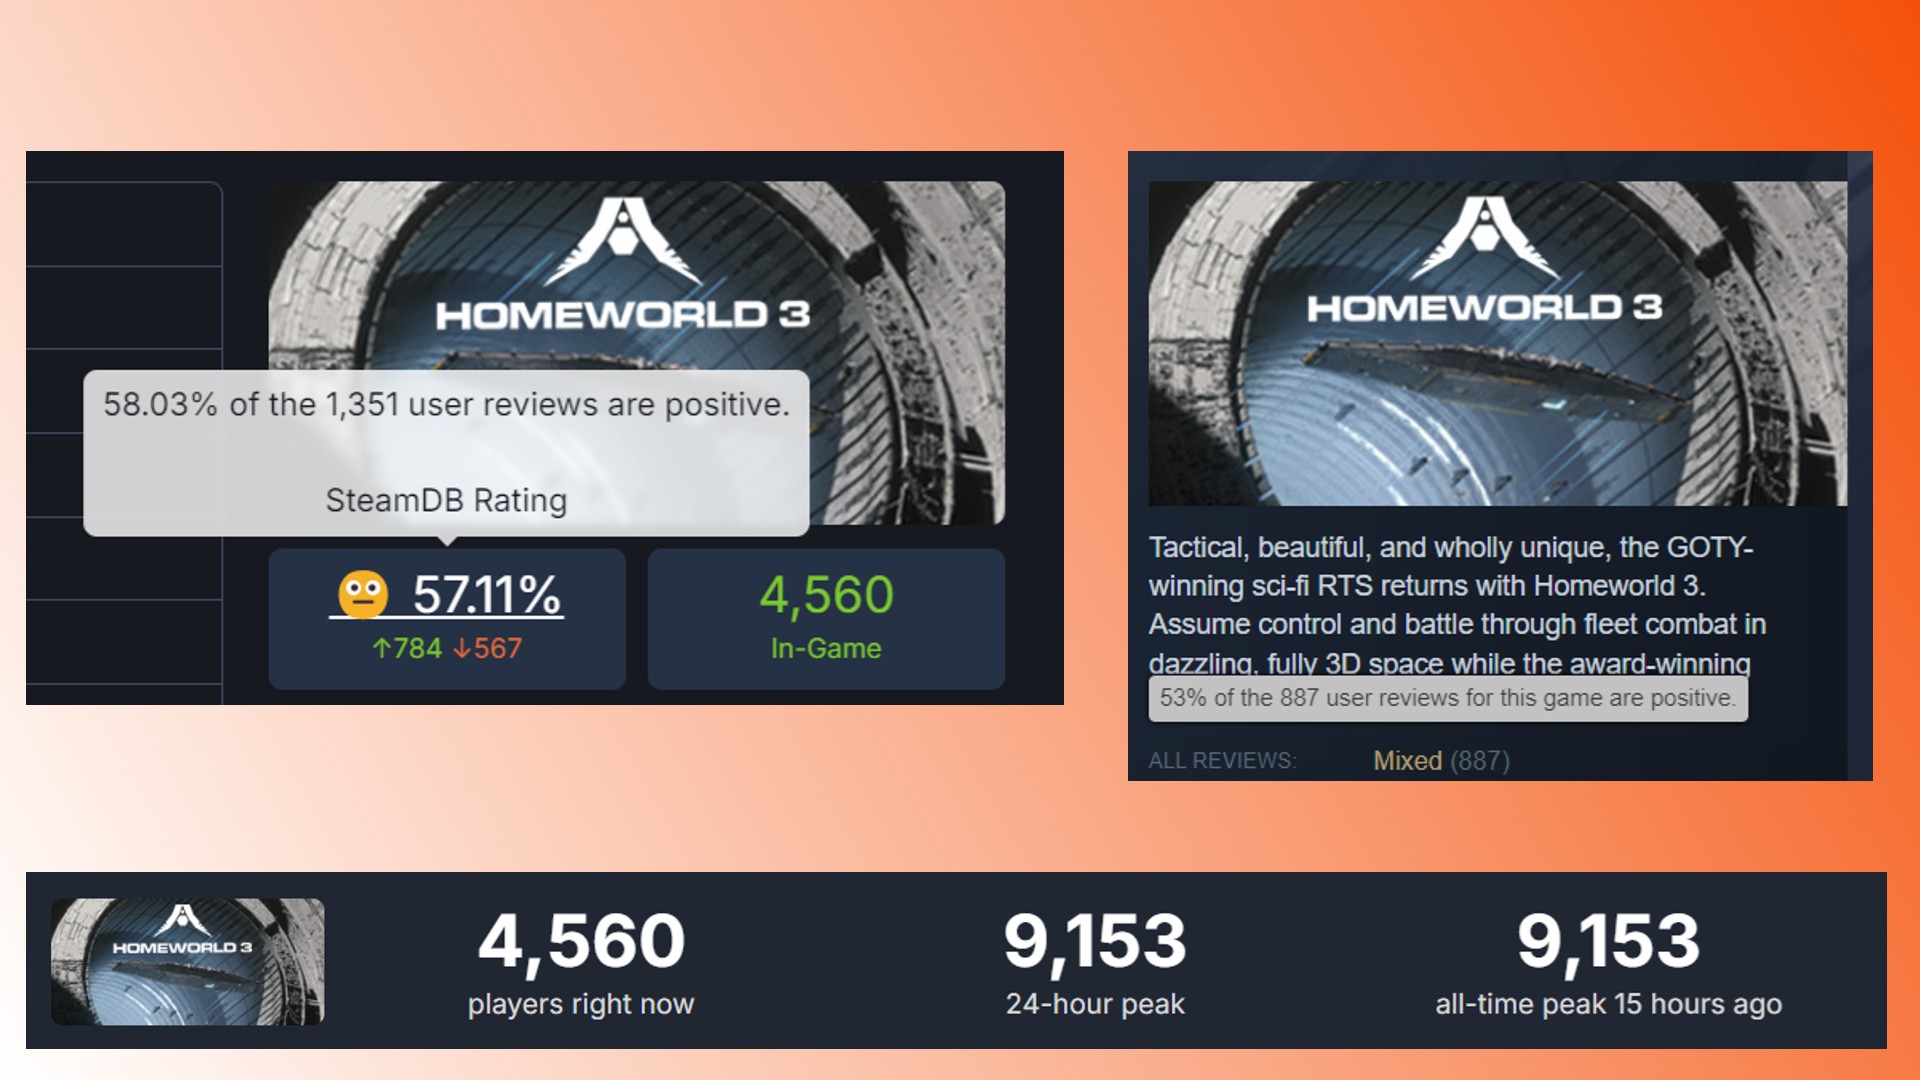 Homeworld 3 Steam RTS-Spielrezensionen: Spielerrezensionen und -ergebnisse für das Steam RTS-Spiel Homeworld 3